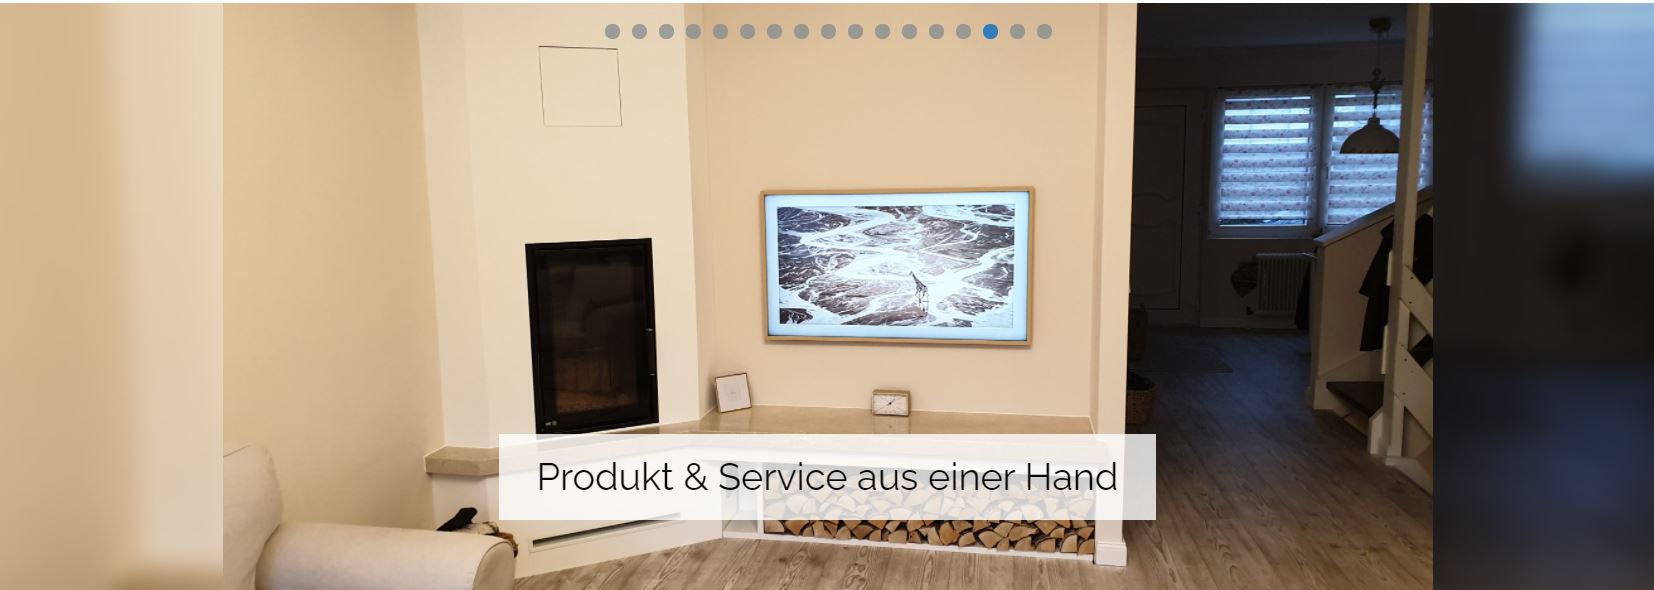 Produkt und Service - Fernsehgeräte | Atlas Vision Store | München